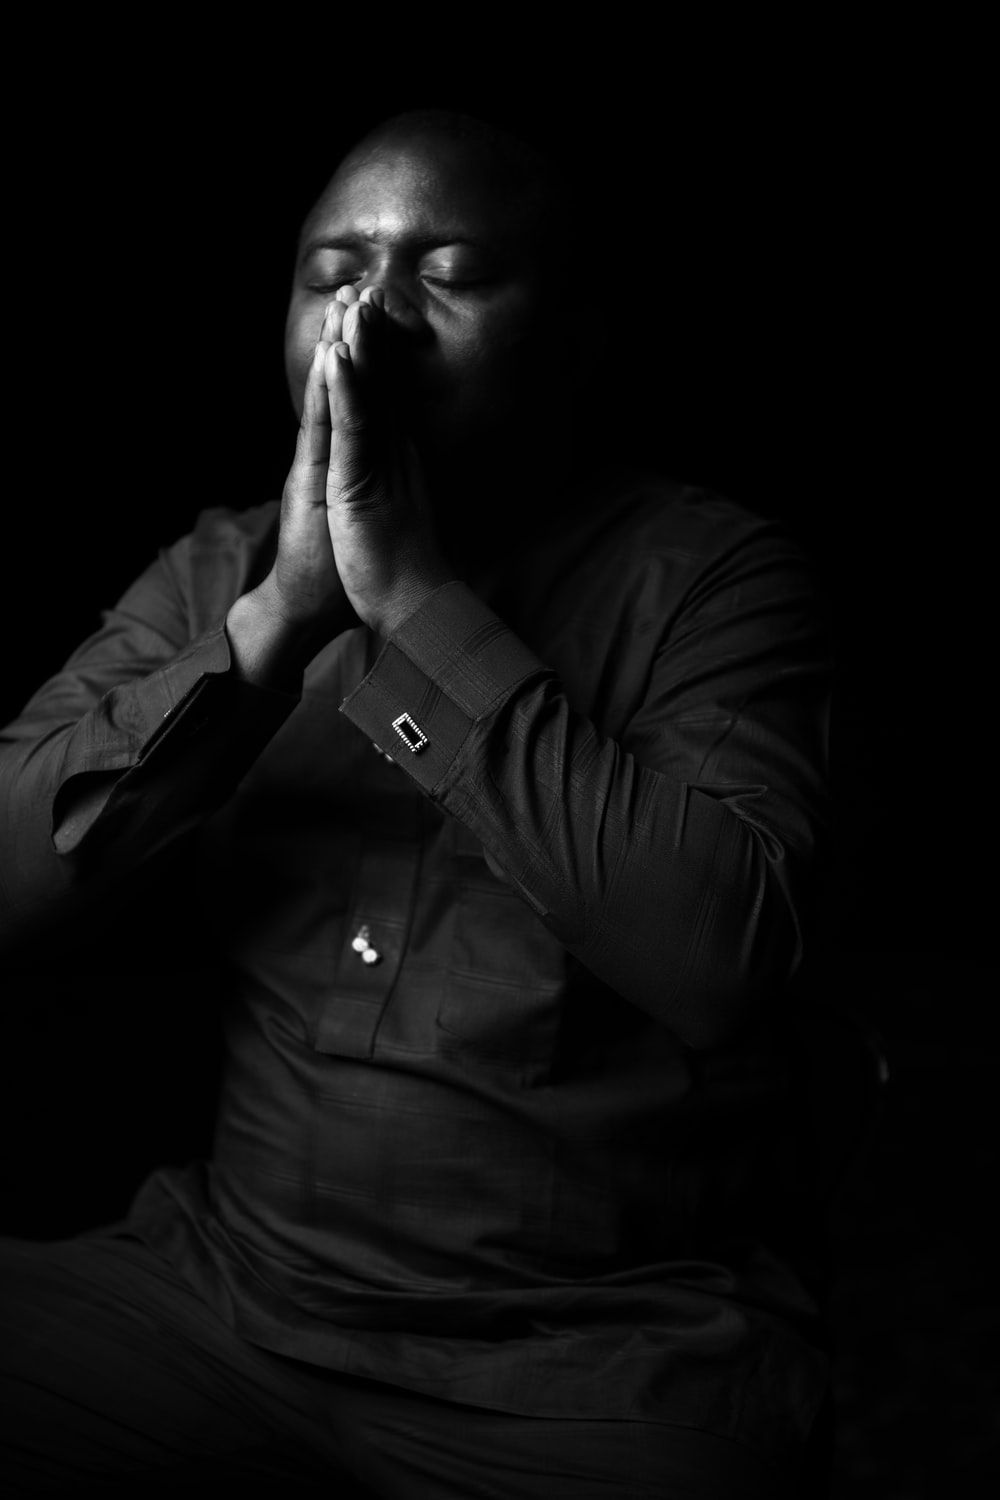 Black Man Praying Picture. Download Free Image